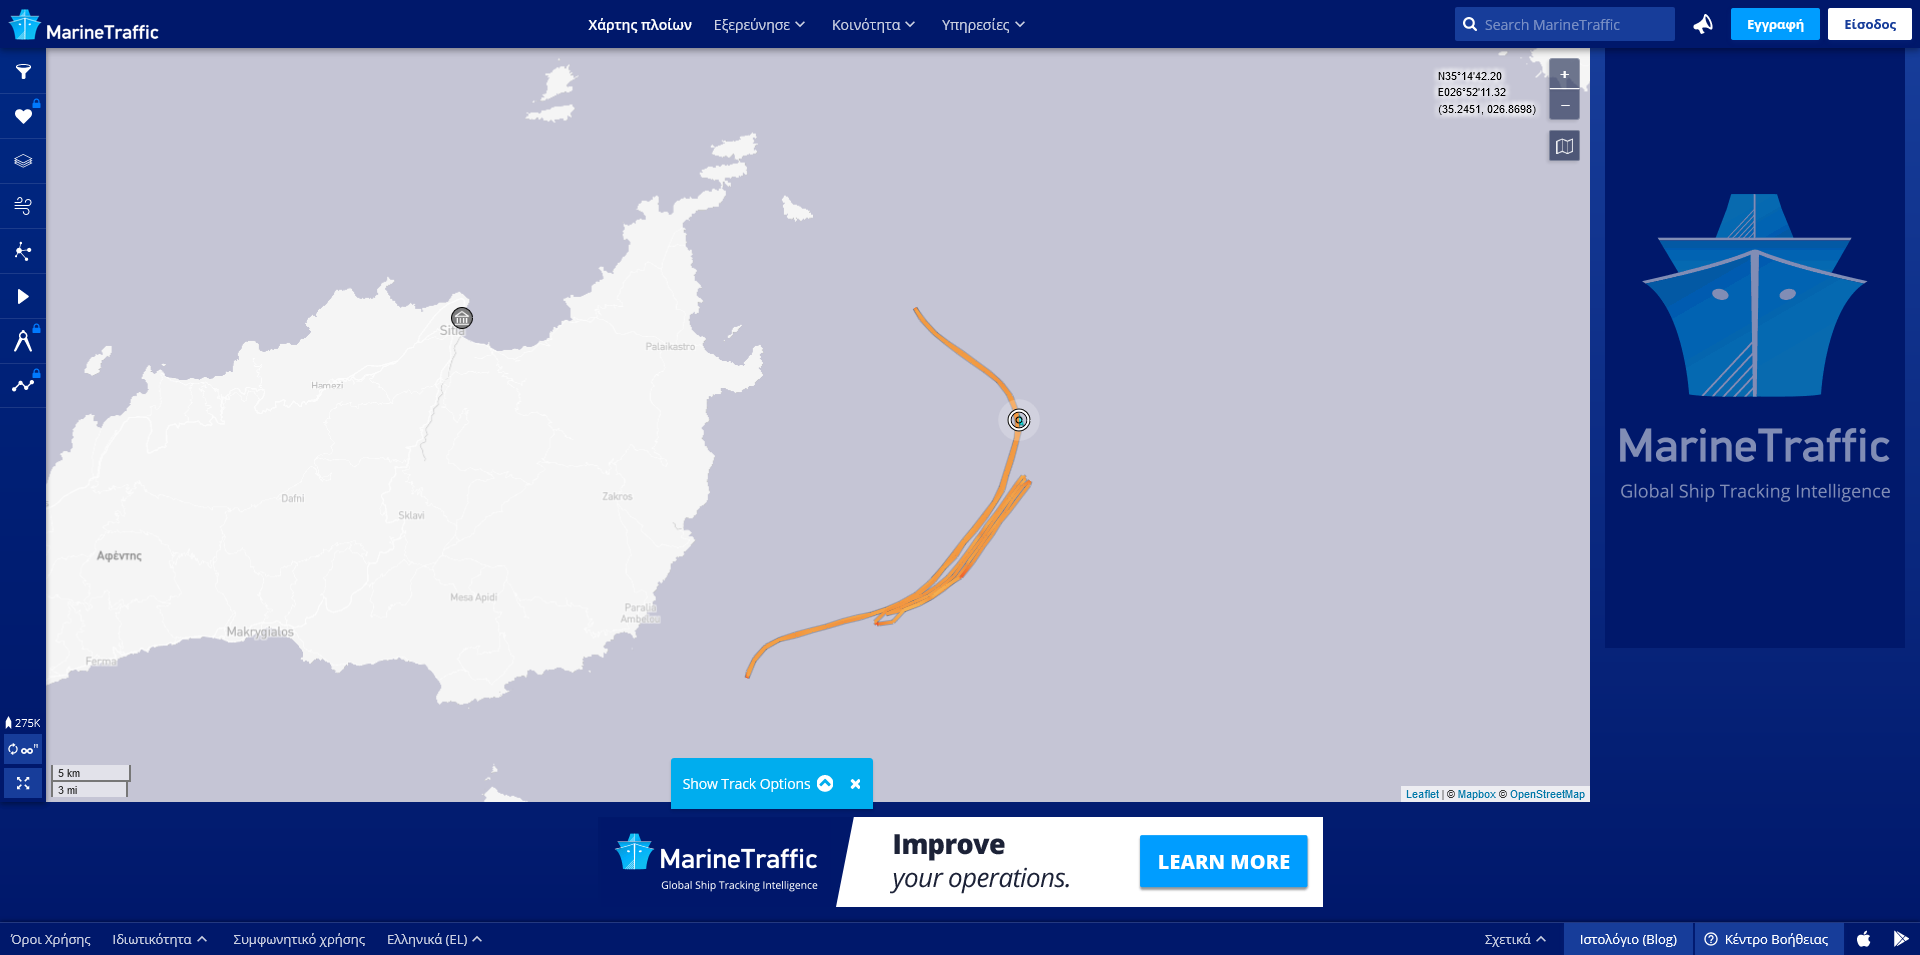 Screenshot 2021-09-21 at 23-12-55 MarineTraffic Global Ship Tracking Intelligence AIS Marine T...png